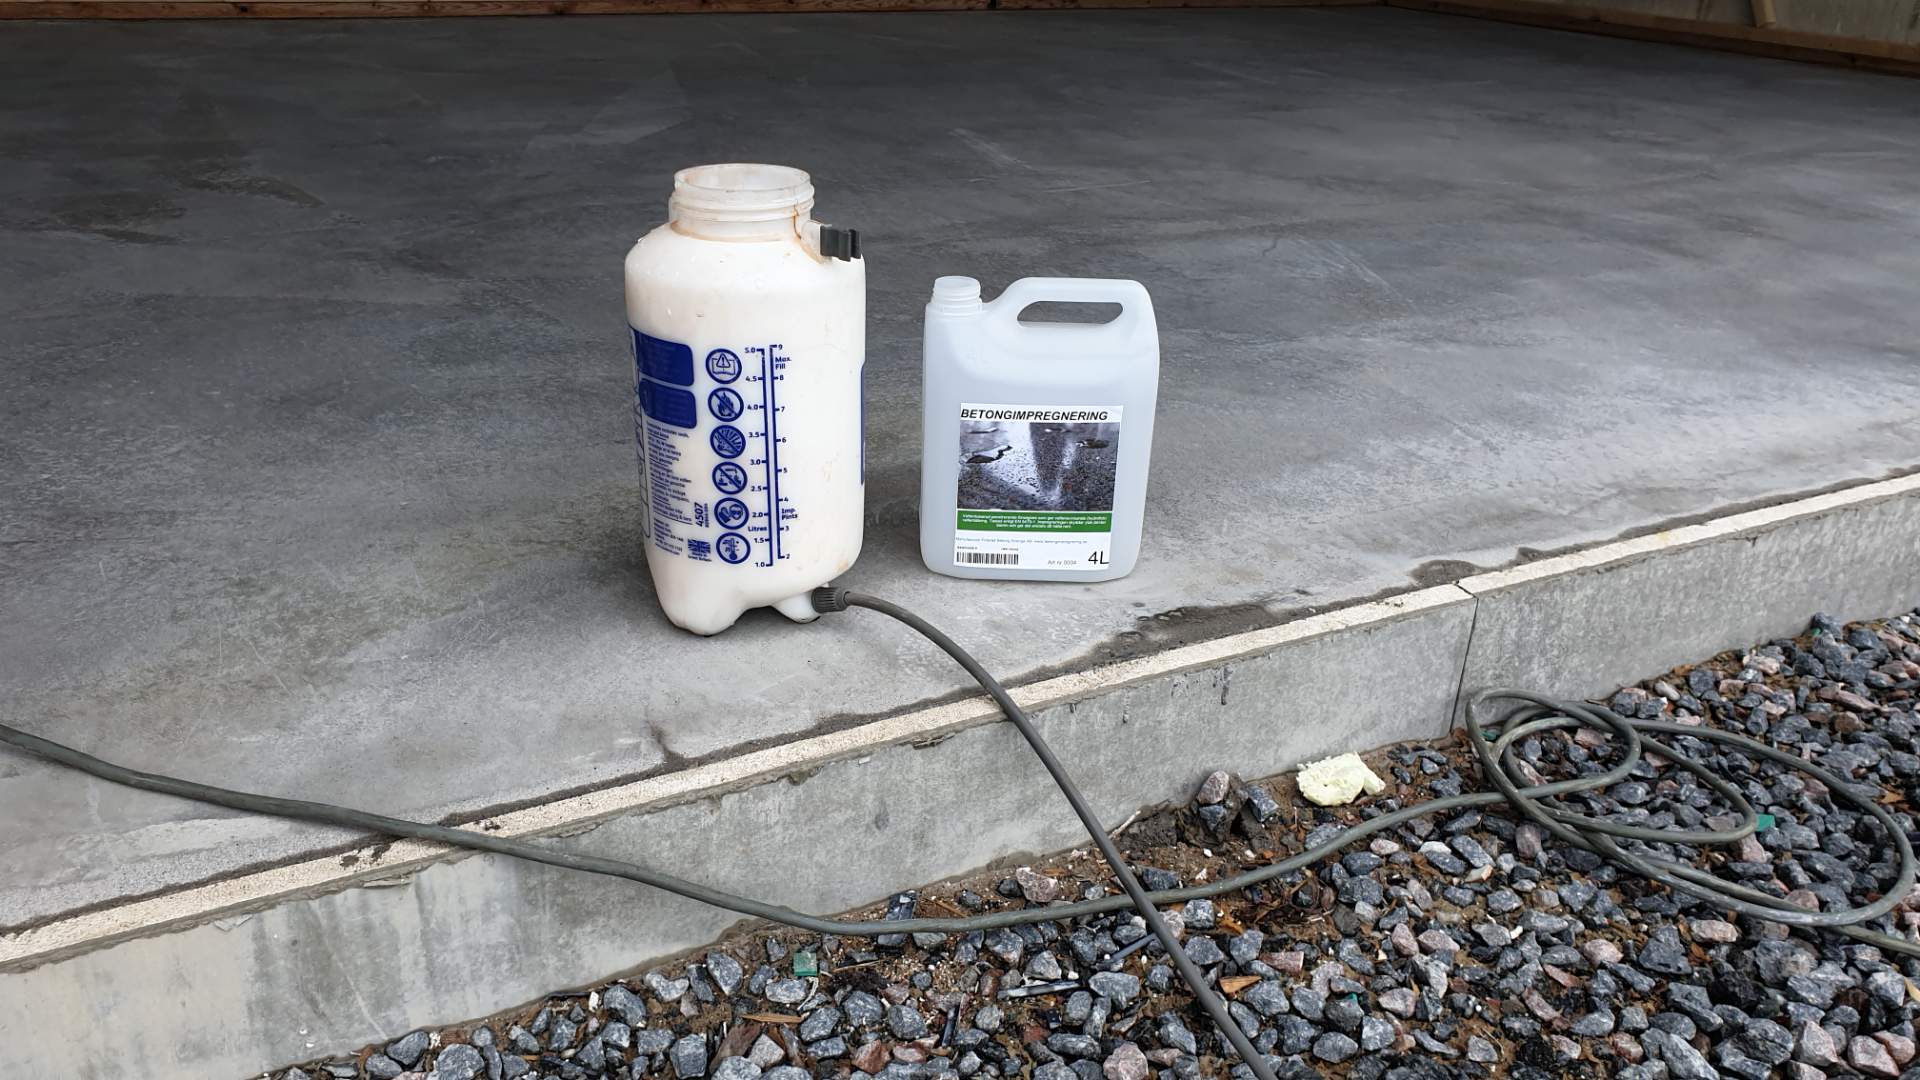 Betongimpregnering NS fylls på i en Sprayer för att behandla ett betonggolv och göra det mera nötningståligt,dammfritt mera lättastädat och hydrofobt.  Det är fortfarande Diffisionsöppet.